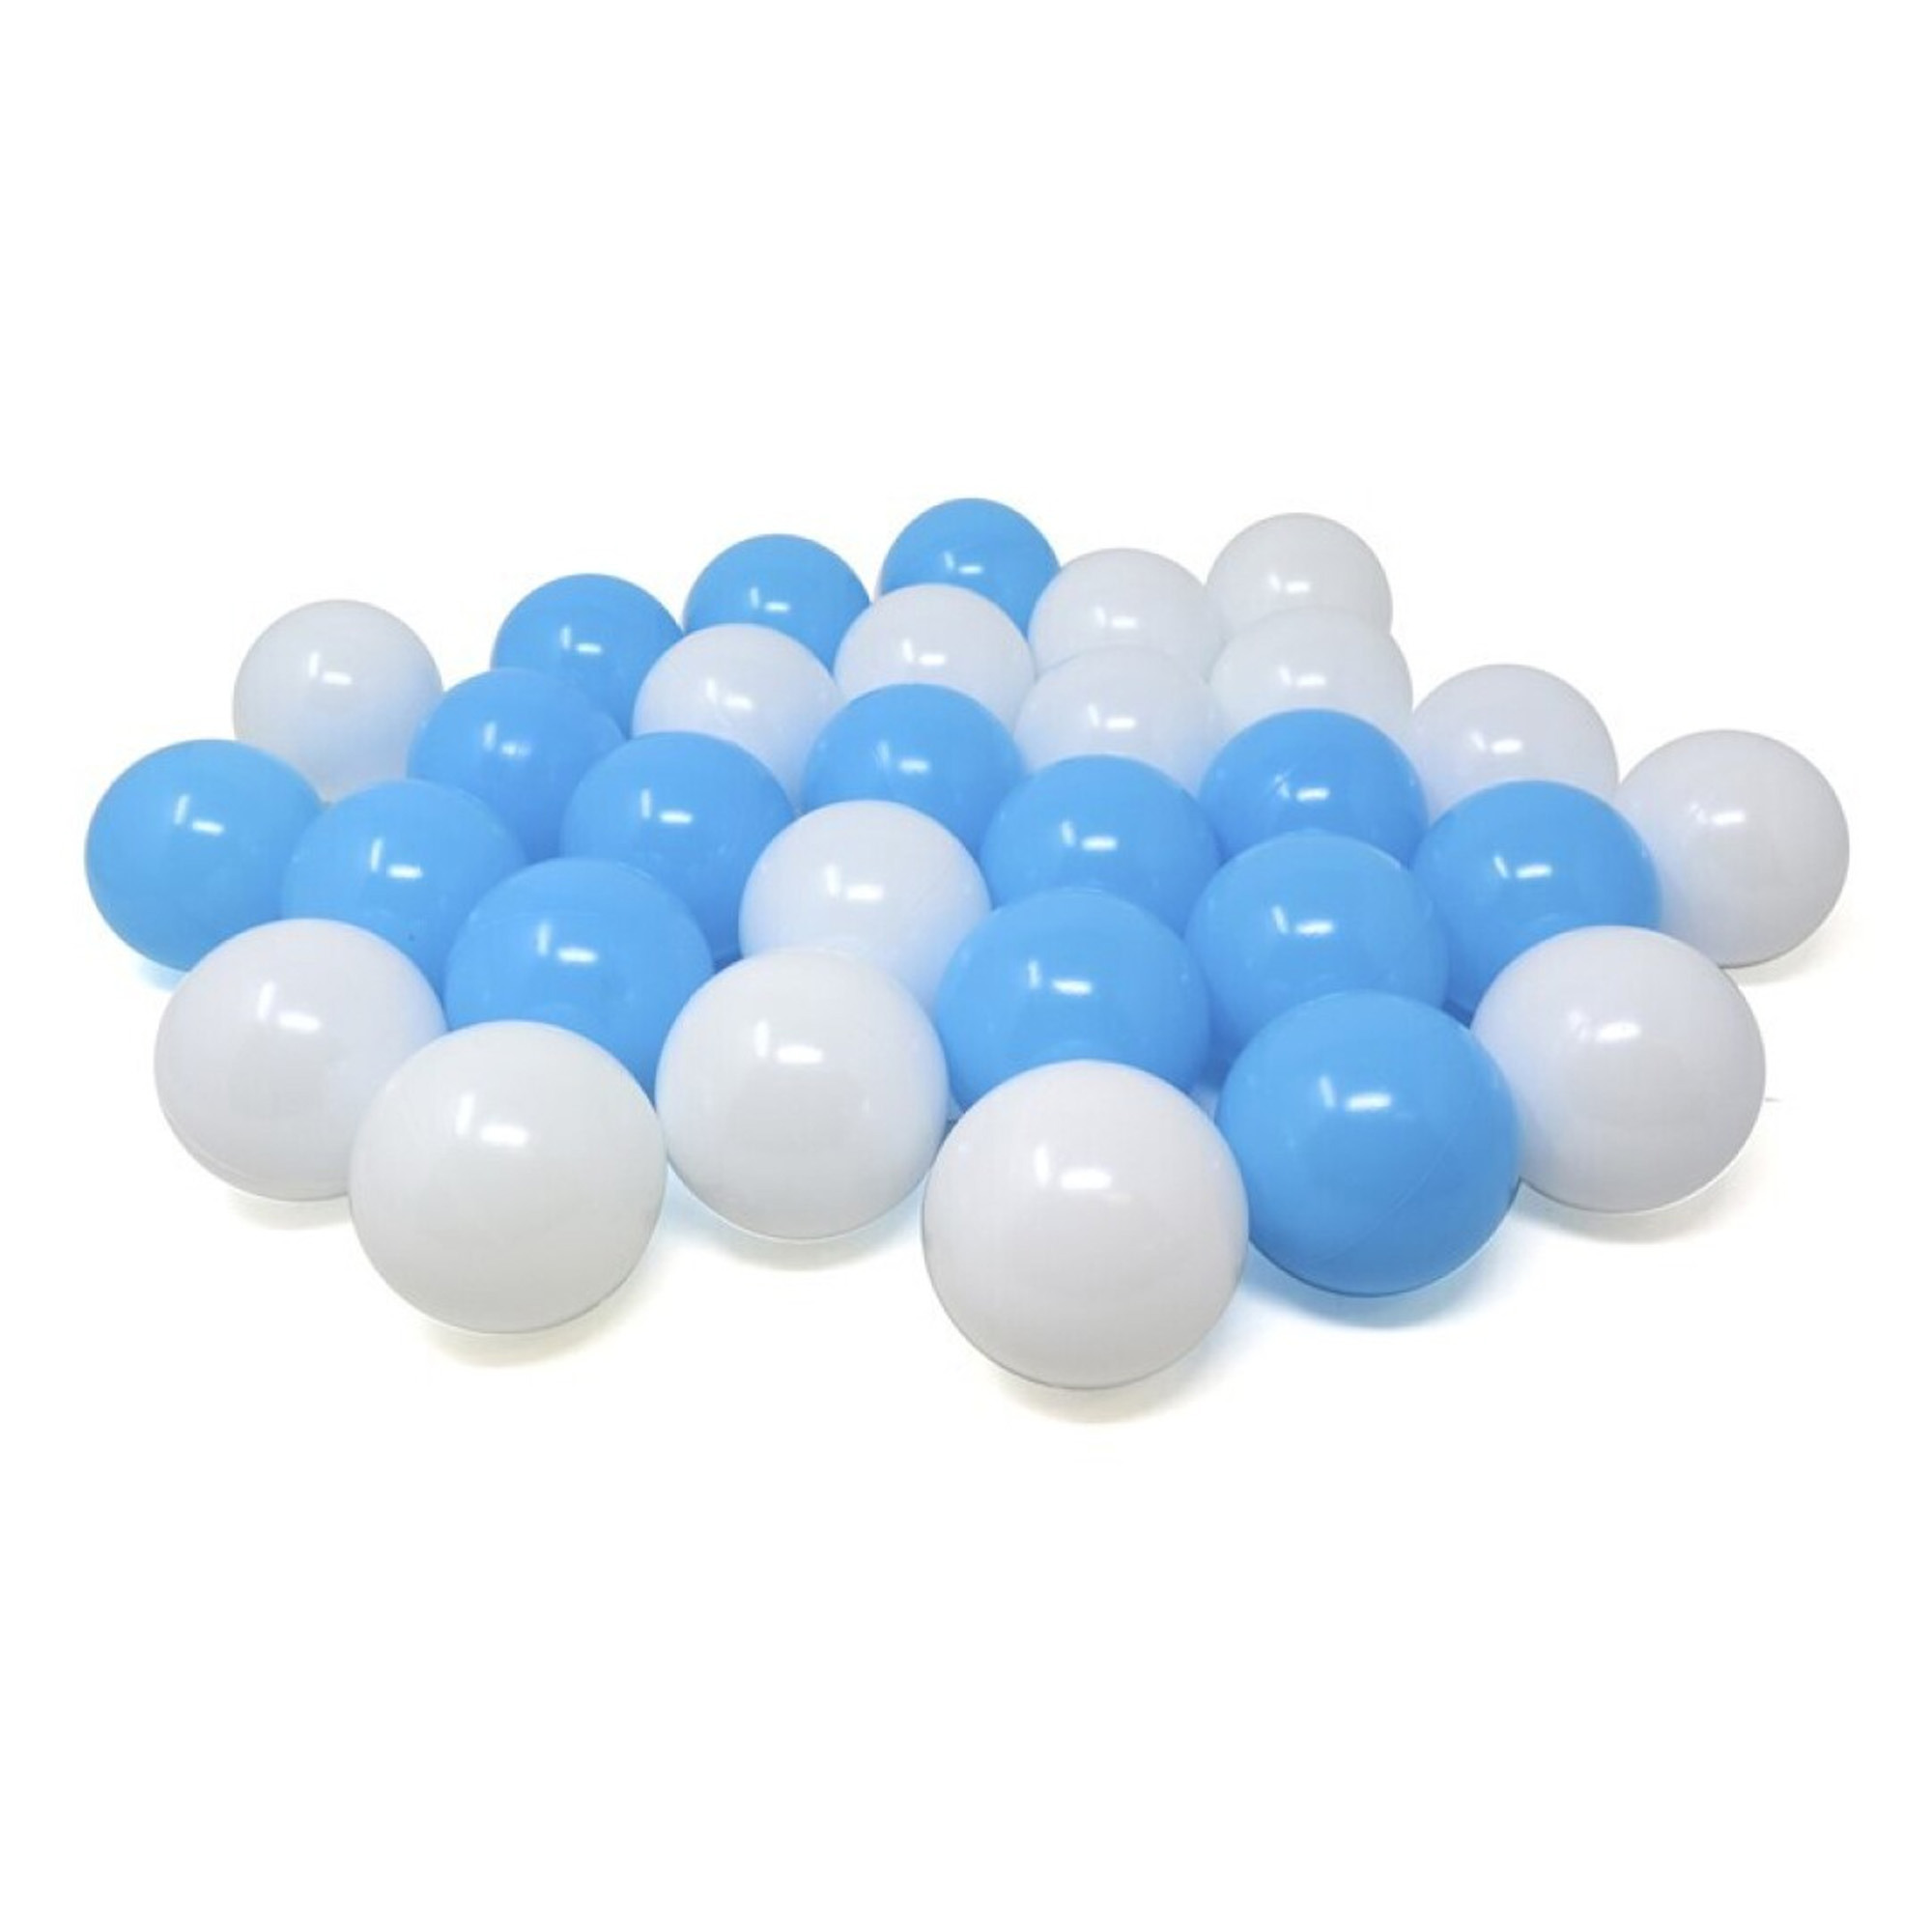 Kunststof ballenbak ballen - blauw/wit - 60x stuks - ca 6 cm